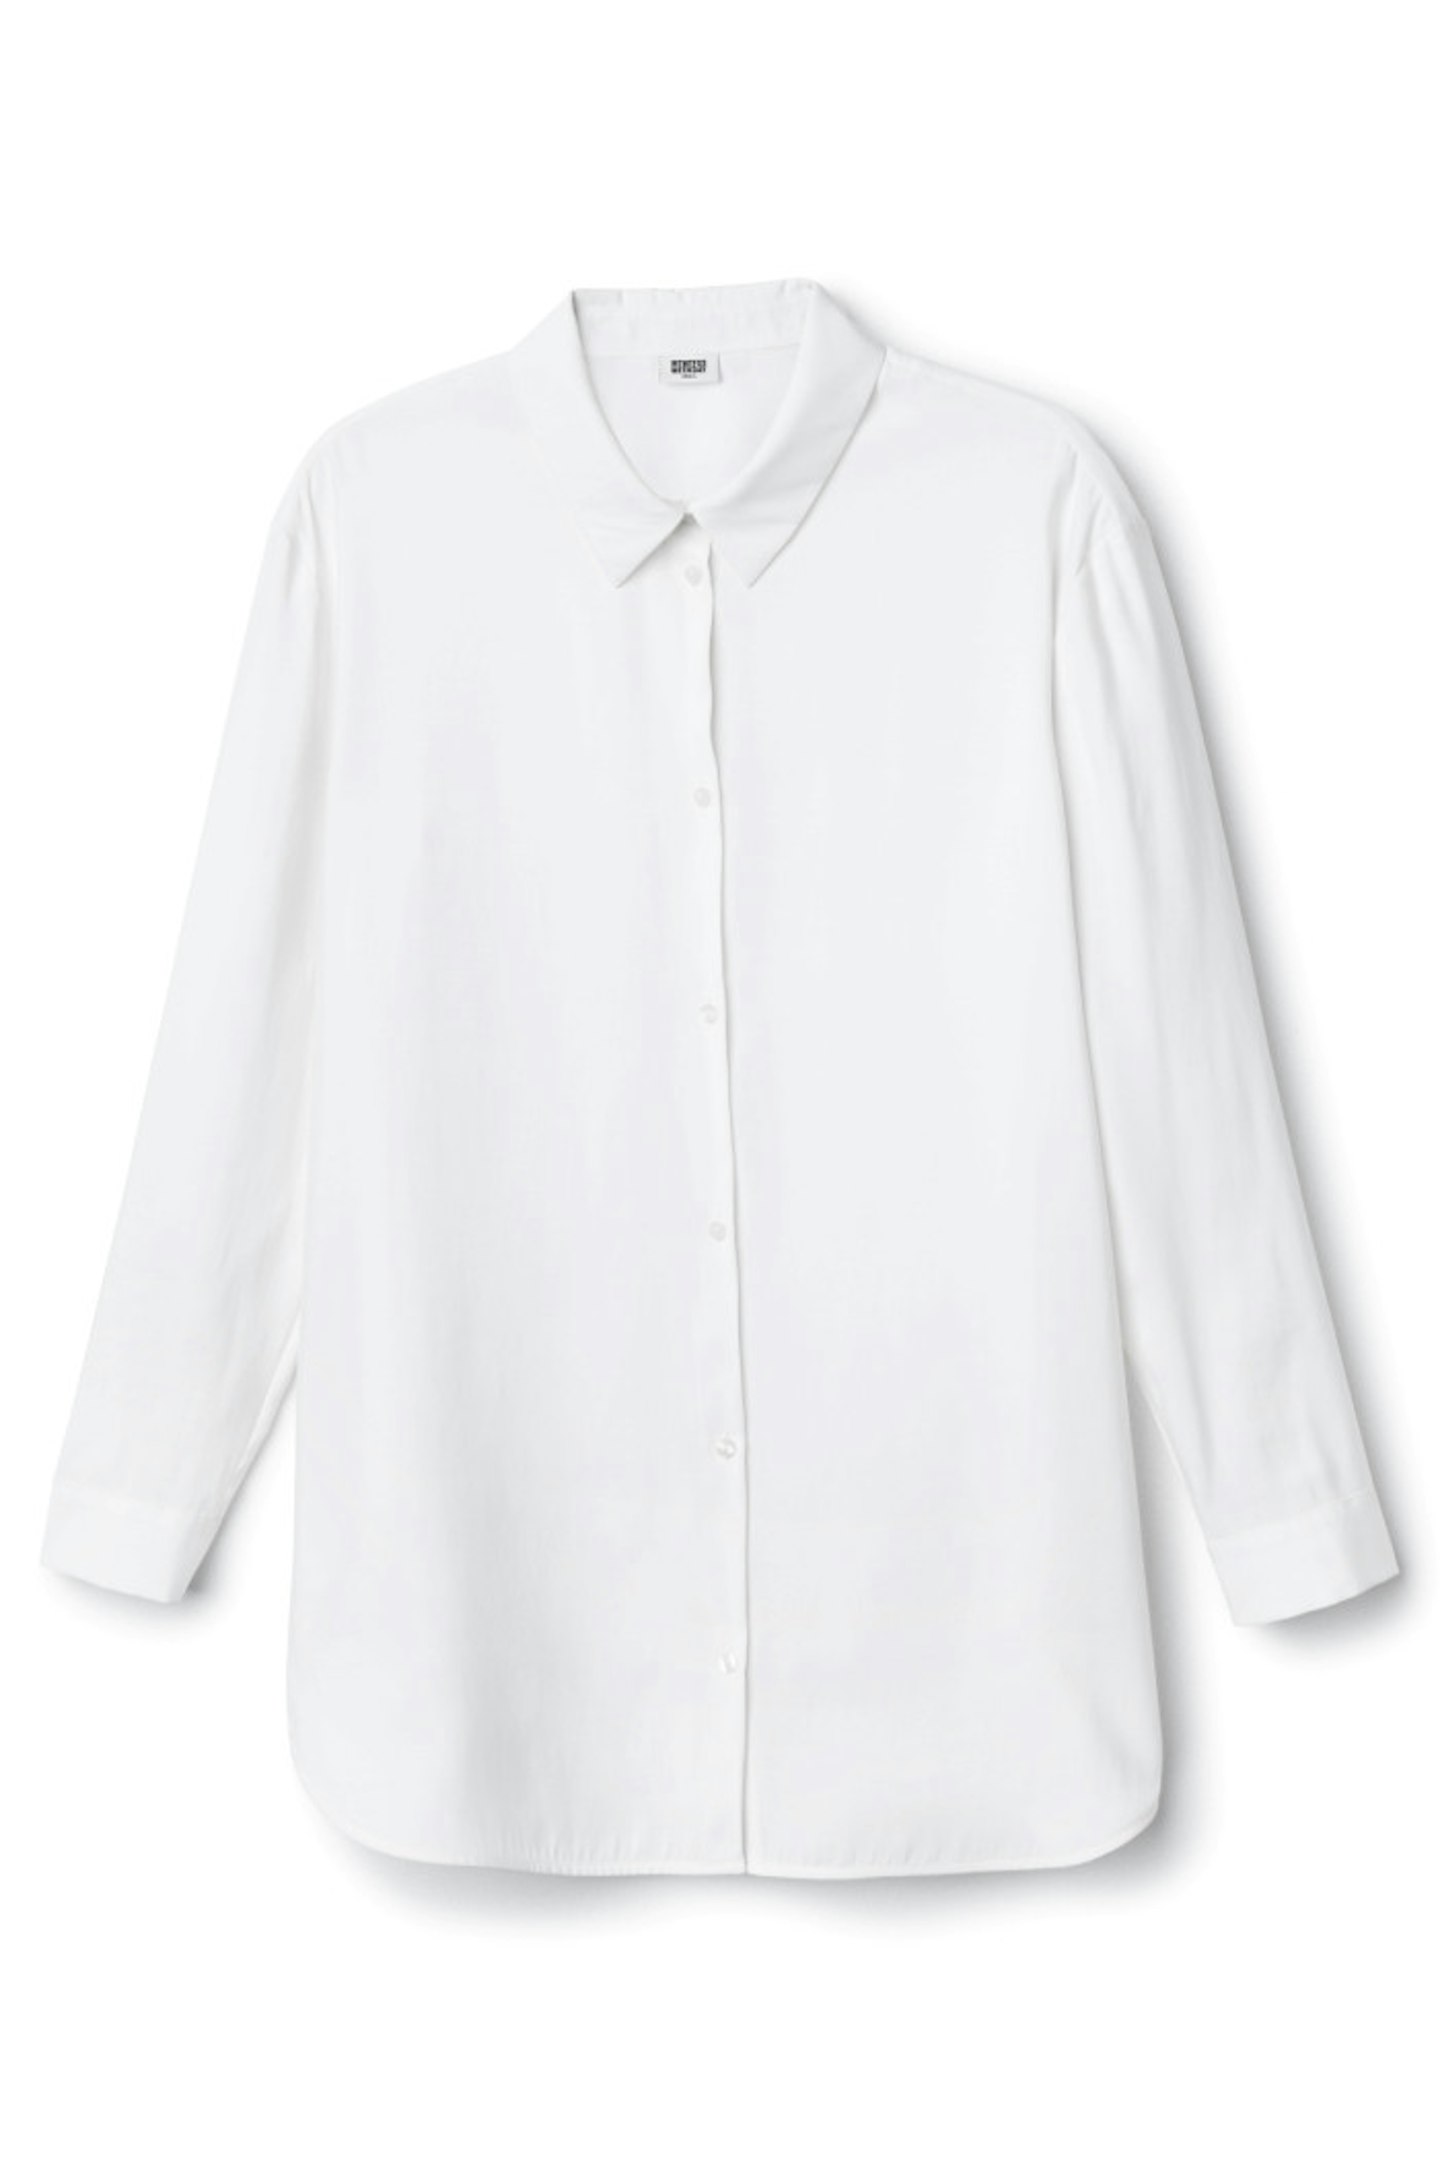 Weekday Cupro Shirt, £45.00